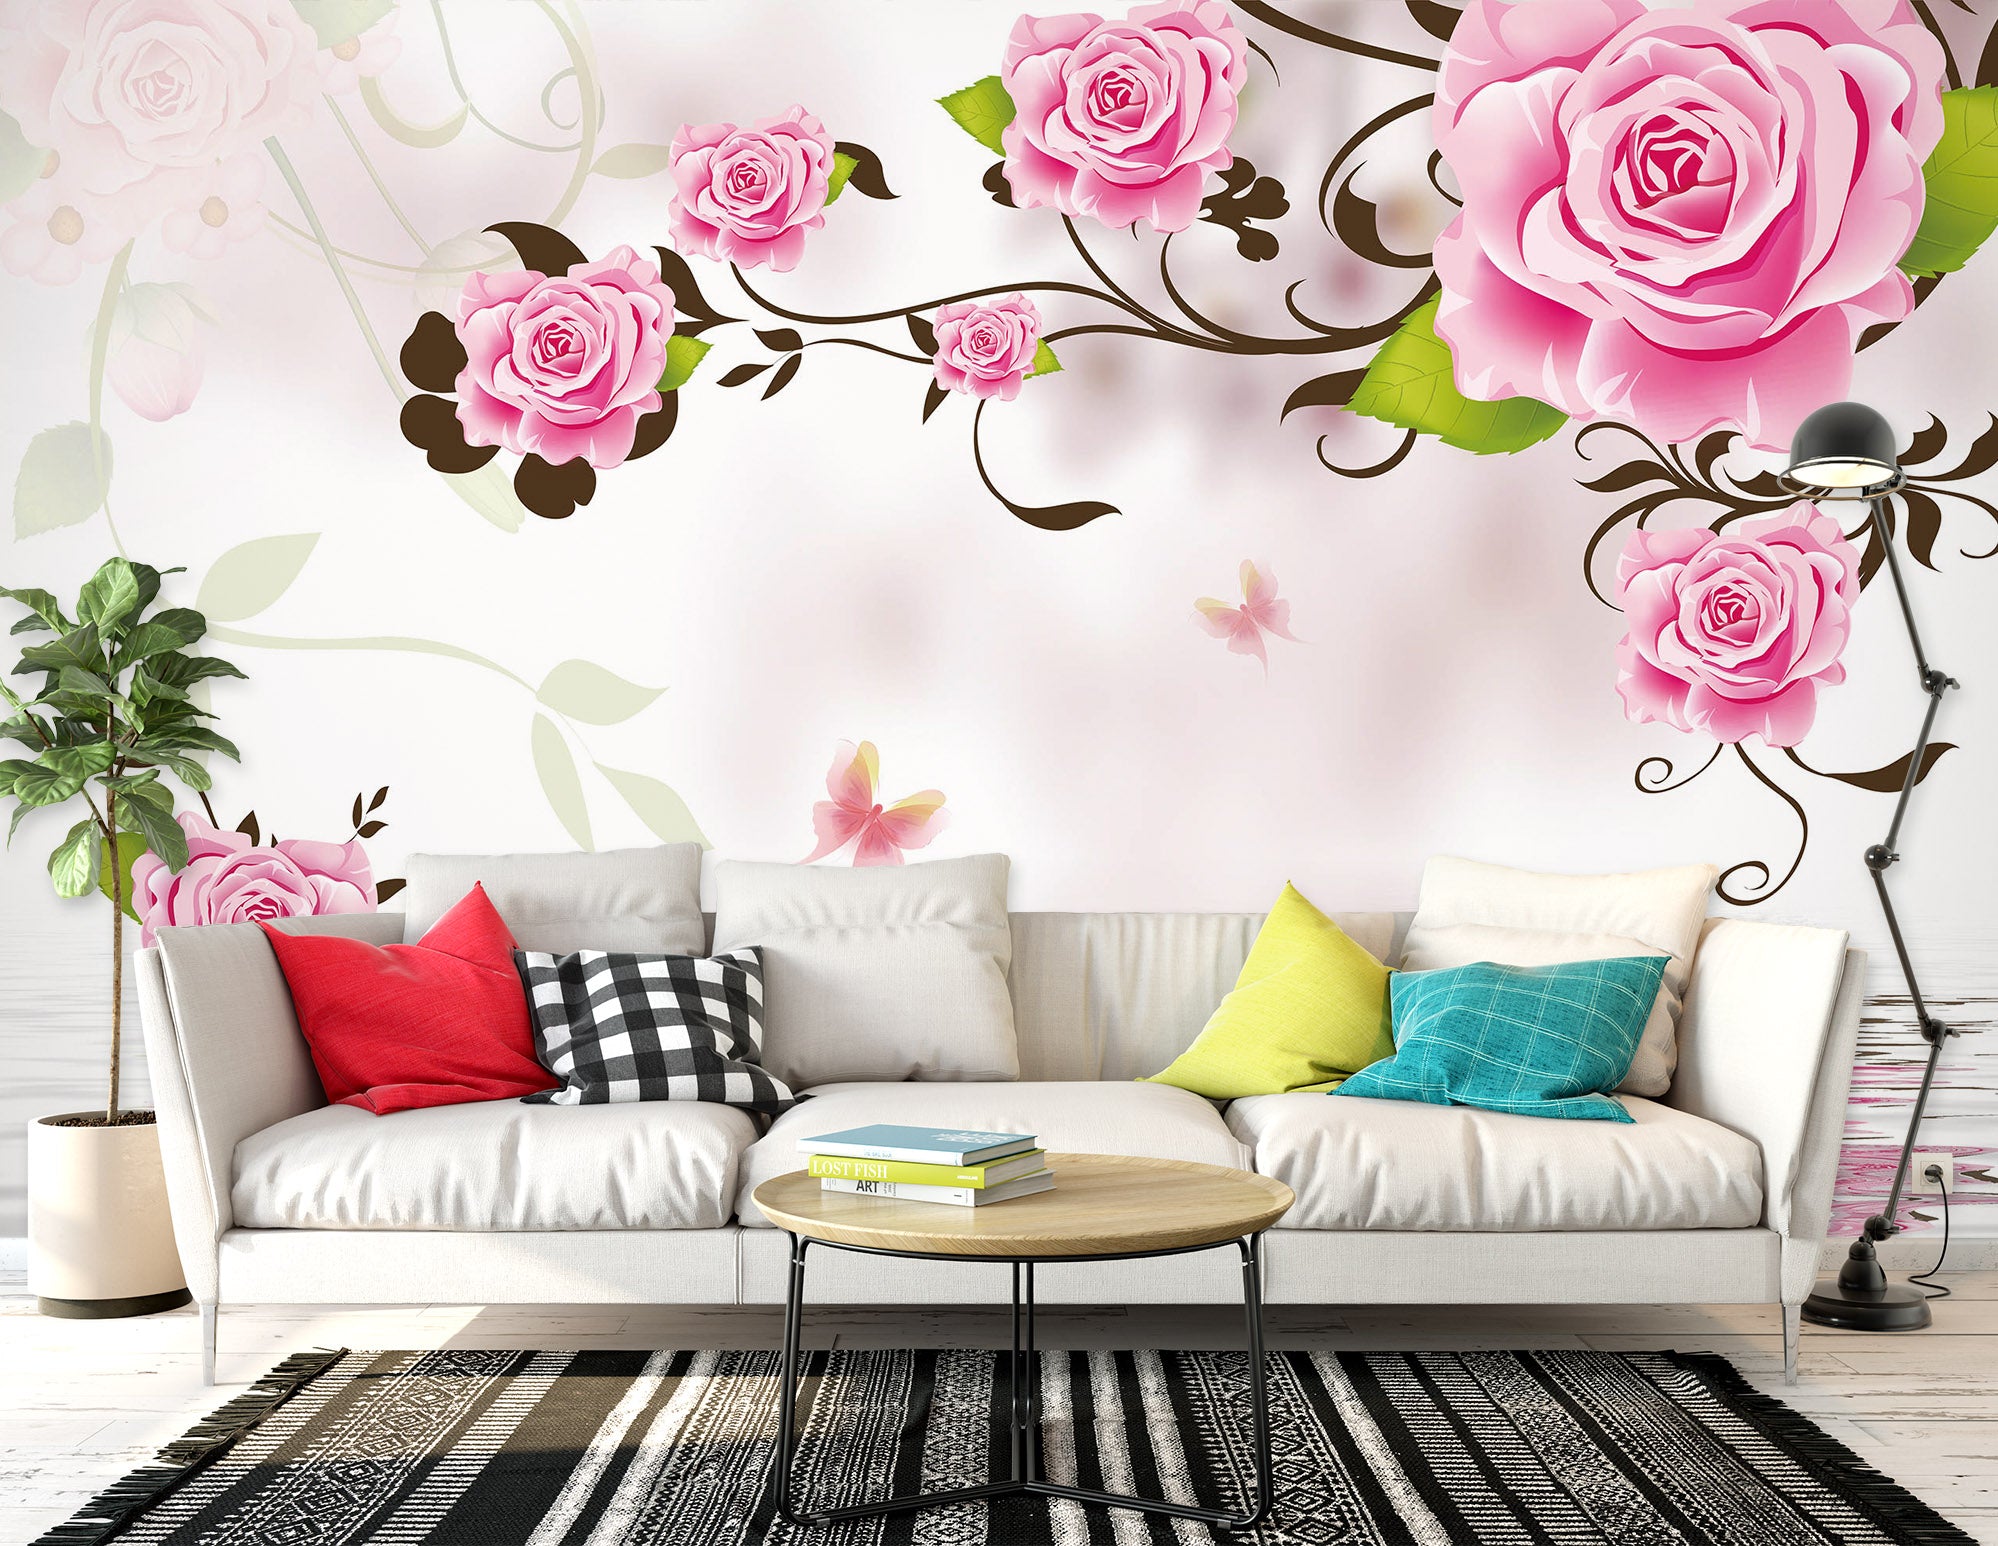 3D Pink Rose 1484 Wall Murals